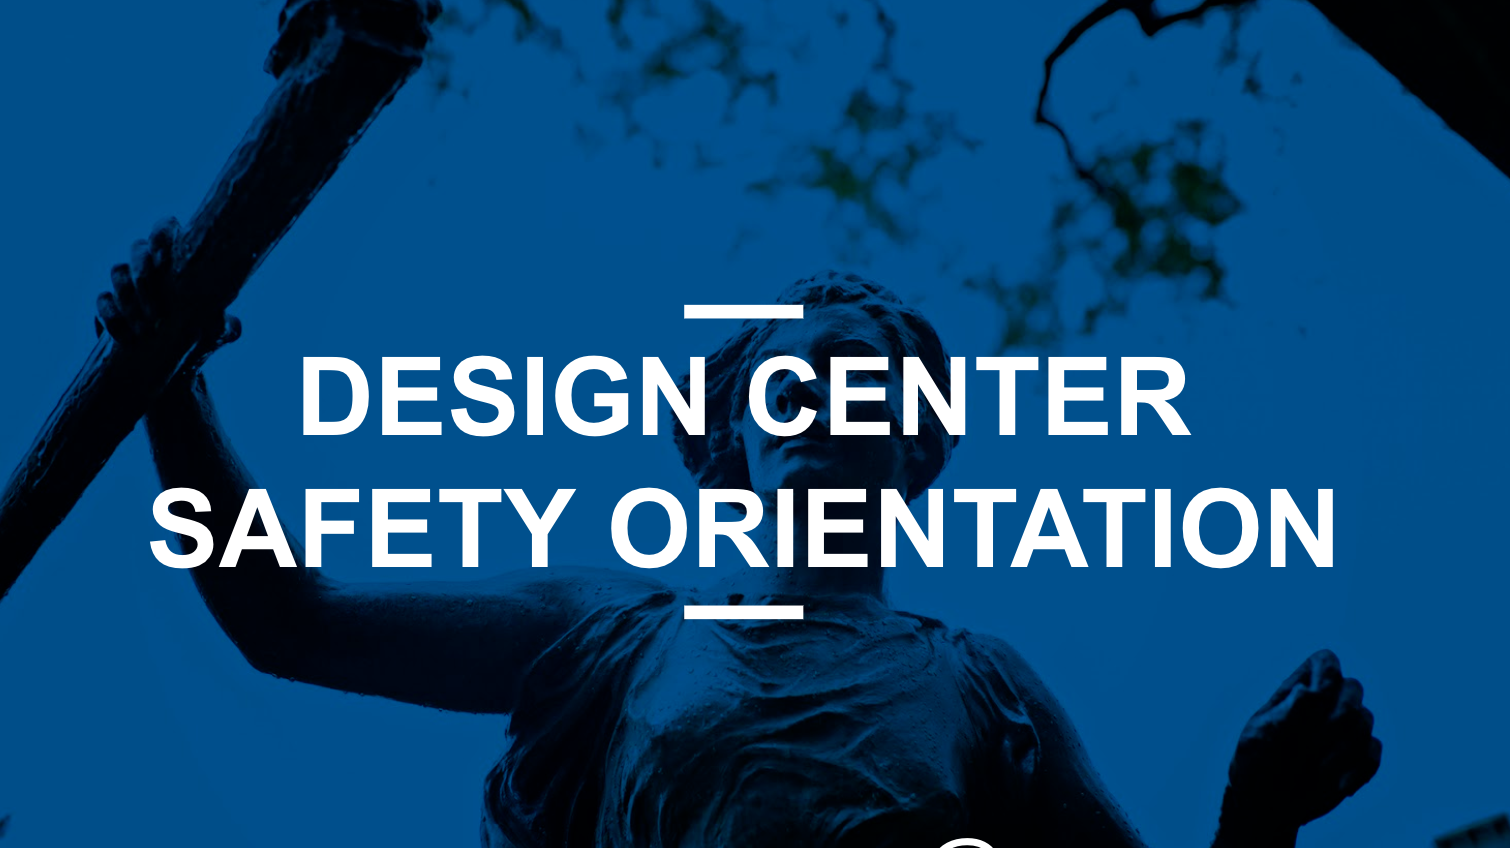 Design Center Safety Orientation